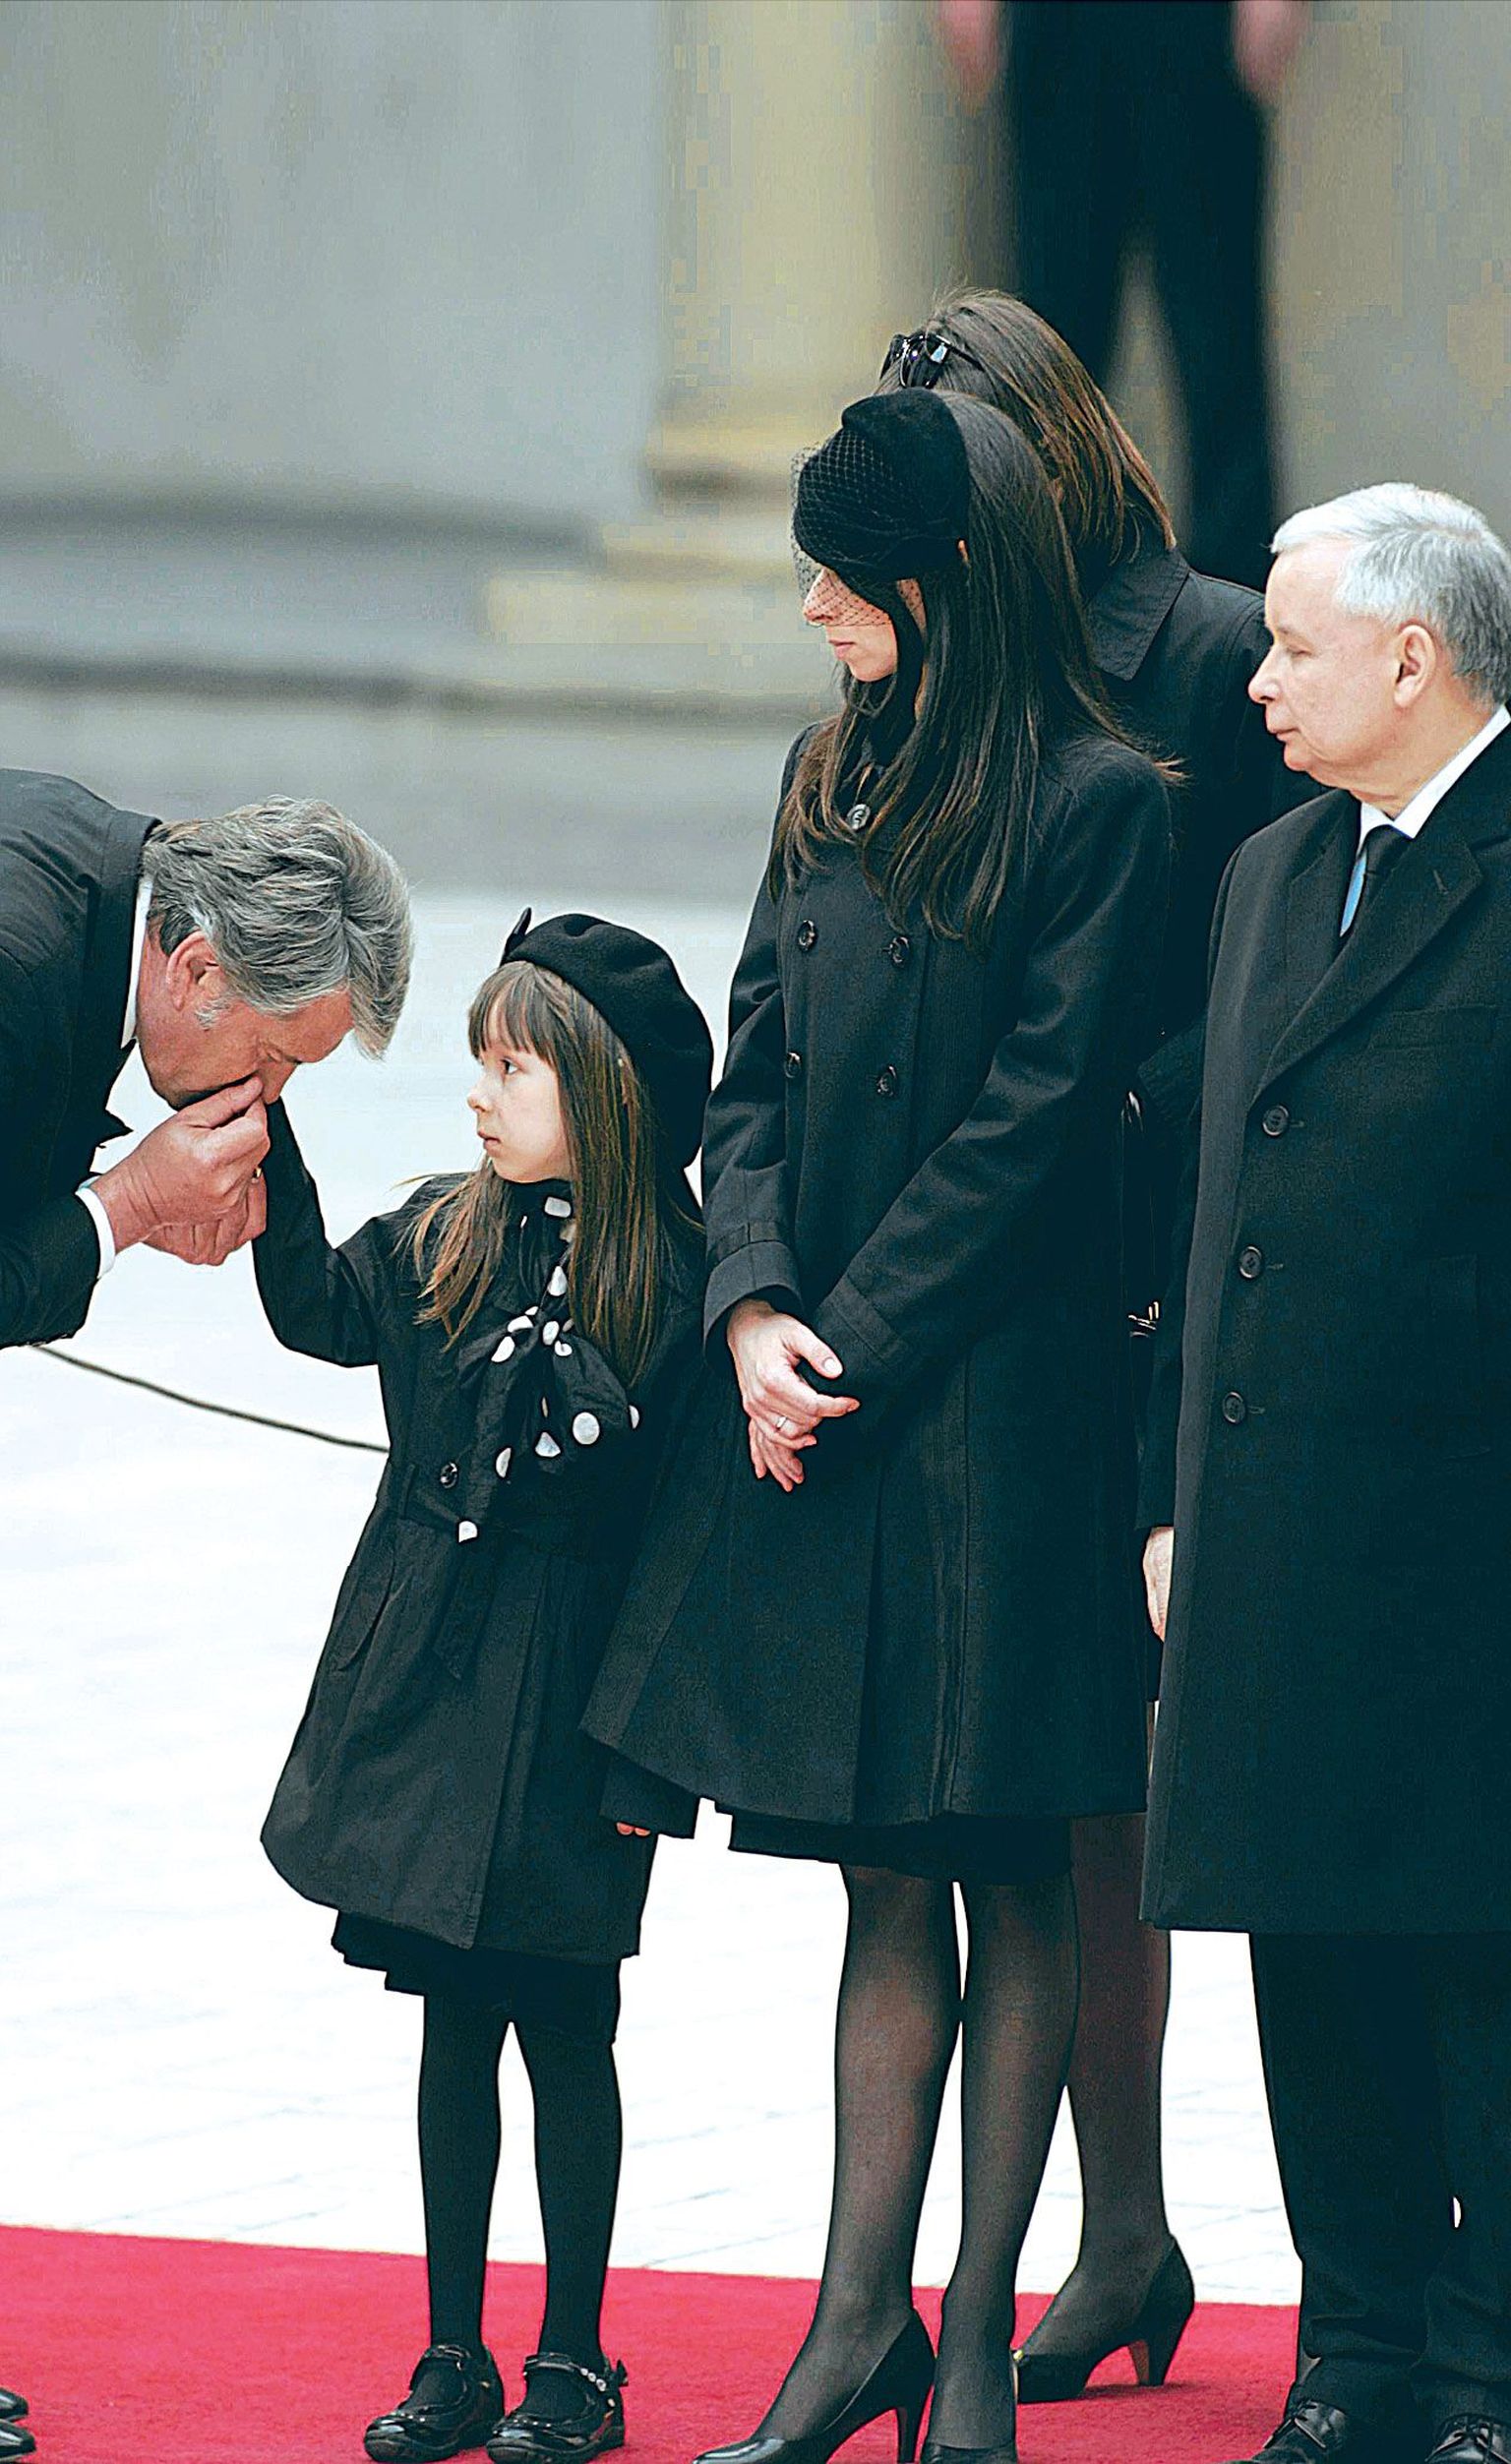 Hukkunud Lech Kaczyński perekond, vend Jaroslaw Kaczynski, tütar Marta ja tütretütar Ewa üleeile matustel. Ewa kätt suudleb endine Ukraina president Viktor Juštšenko.